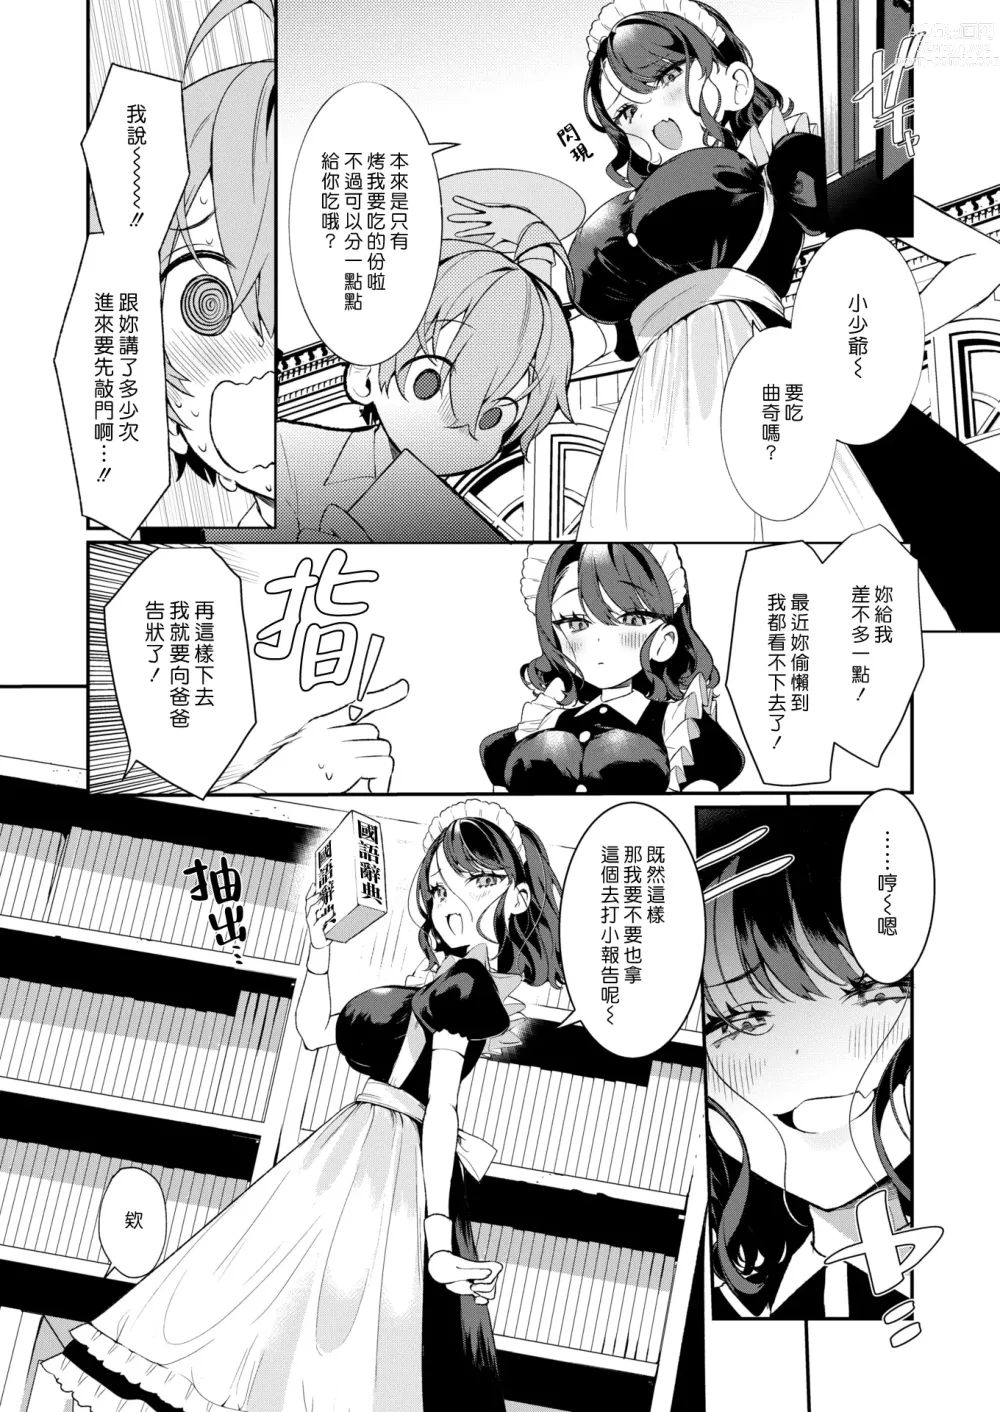 Page 4 of manga 懶懶散散俏女僕瑠衣姊